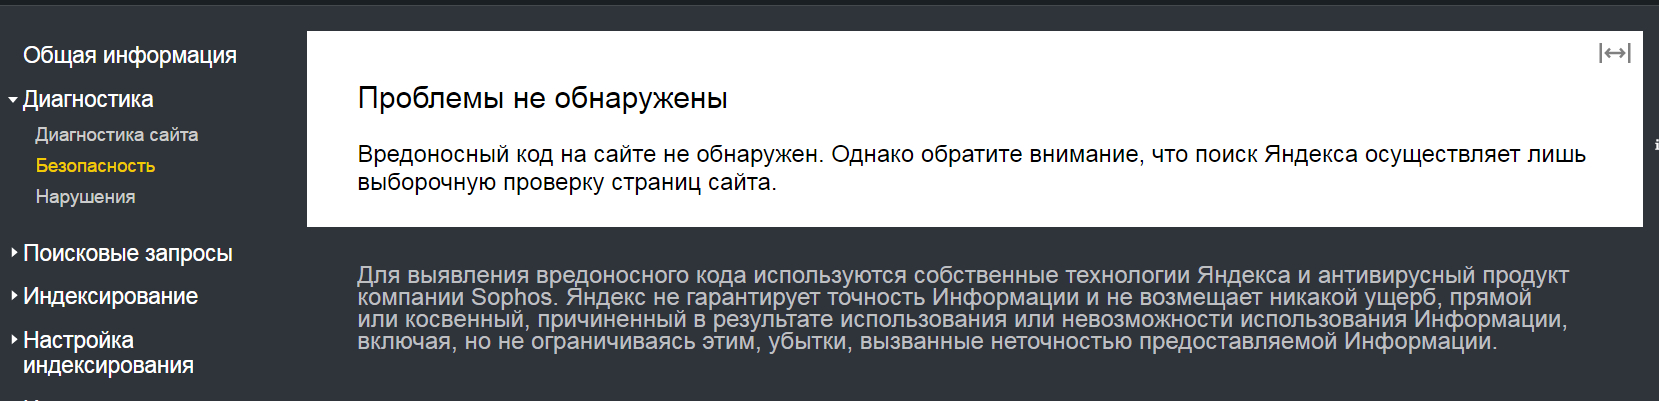 Подраздел «Диагностика сайта» в Яндекс.Вебмастере.